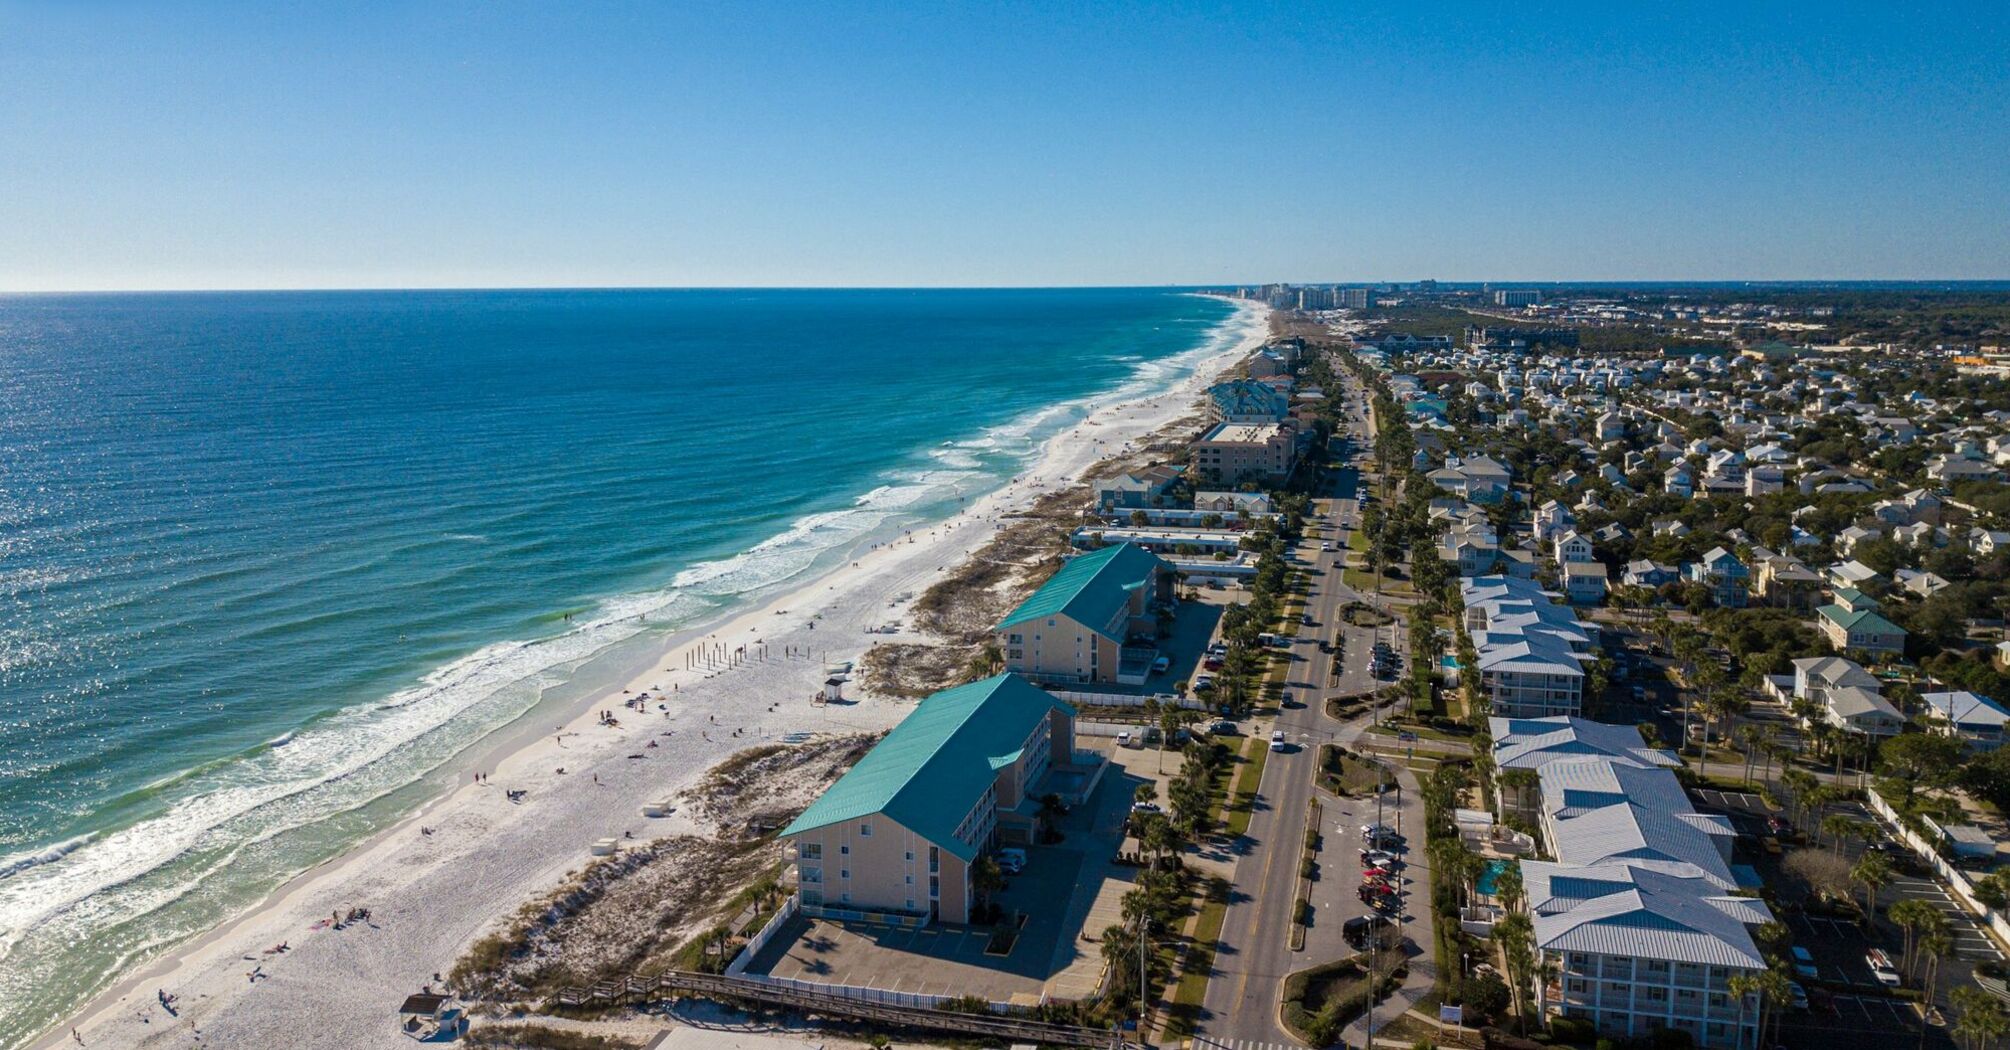 Aerial view of Destin, Florida coastline and beach